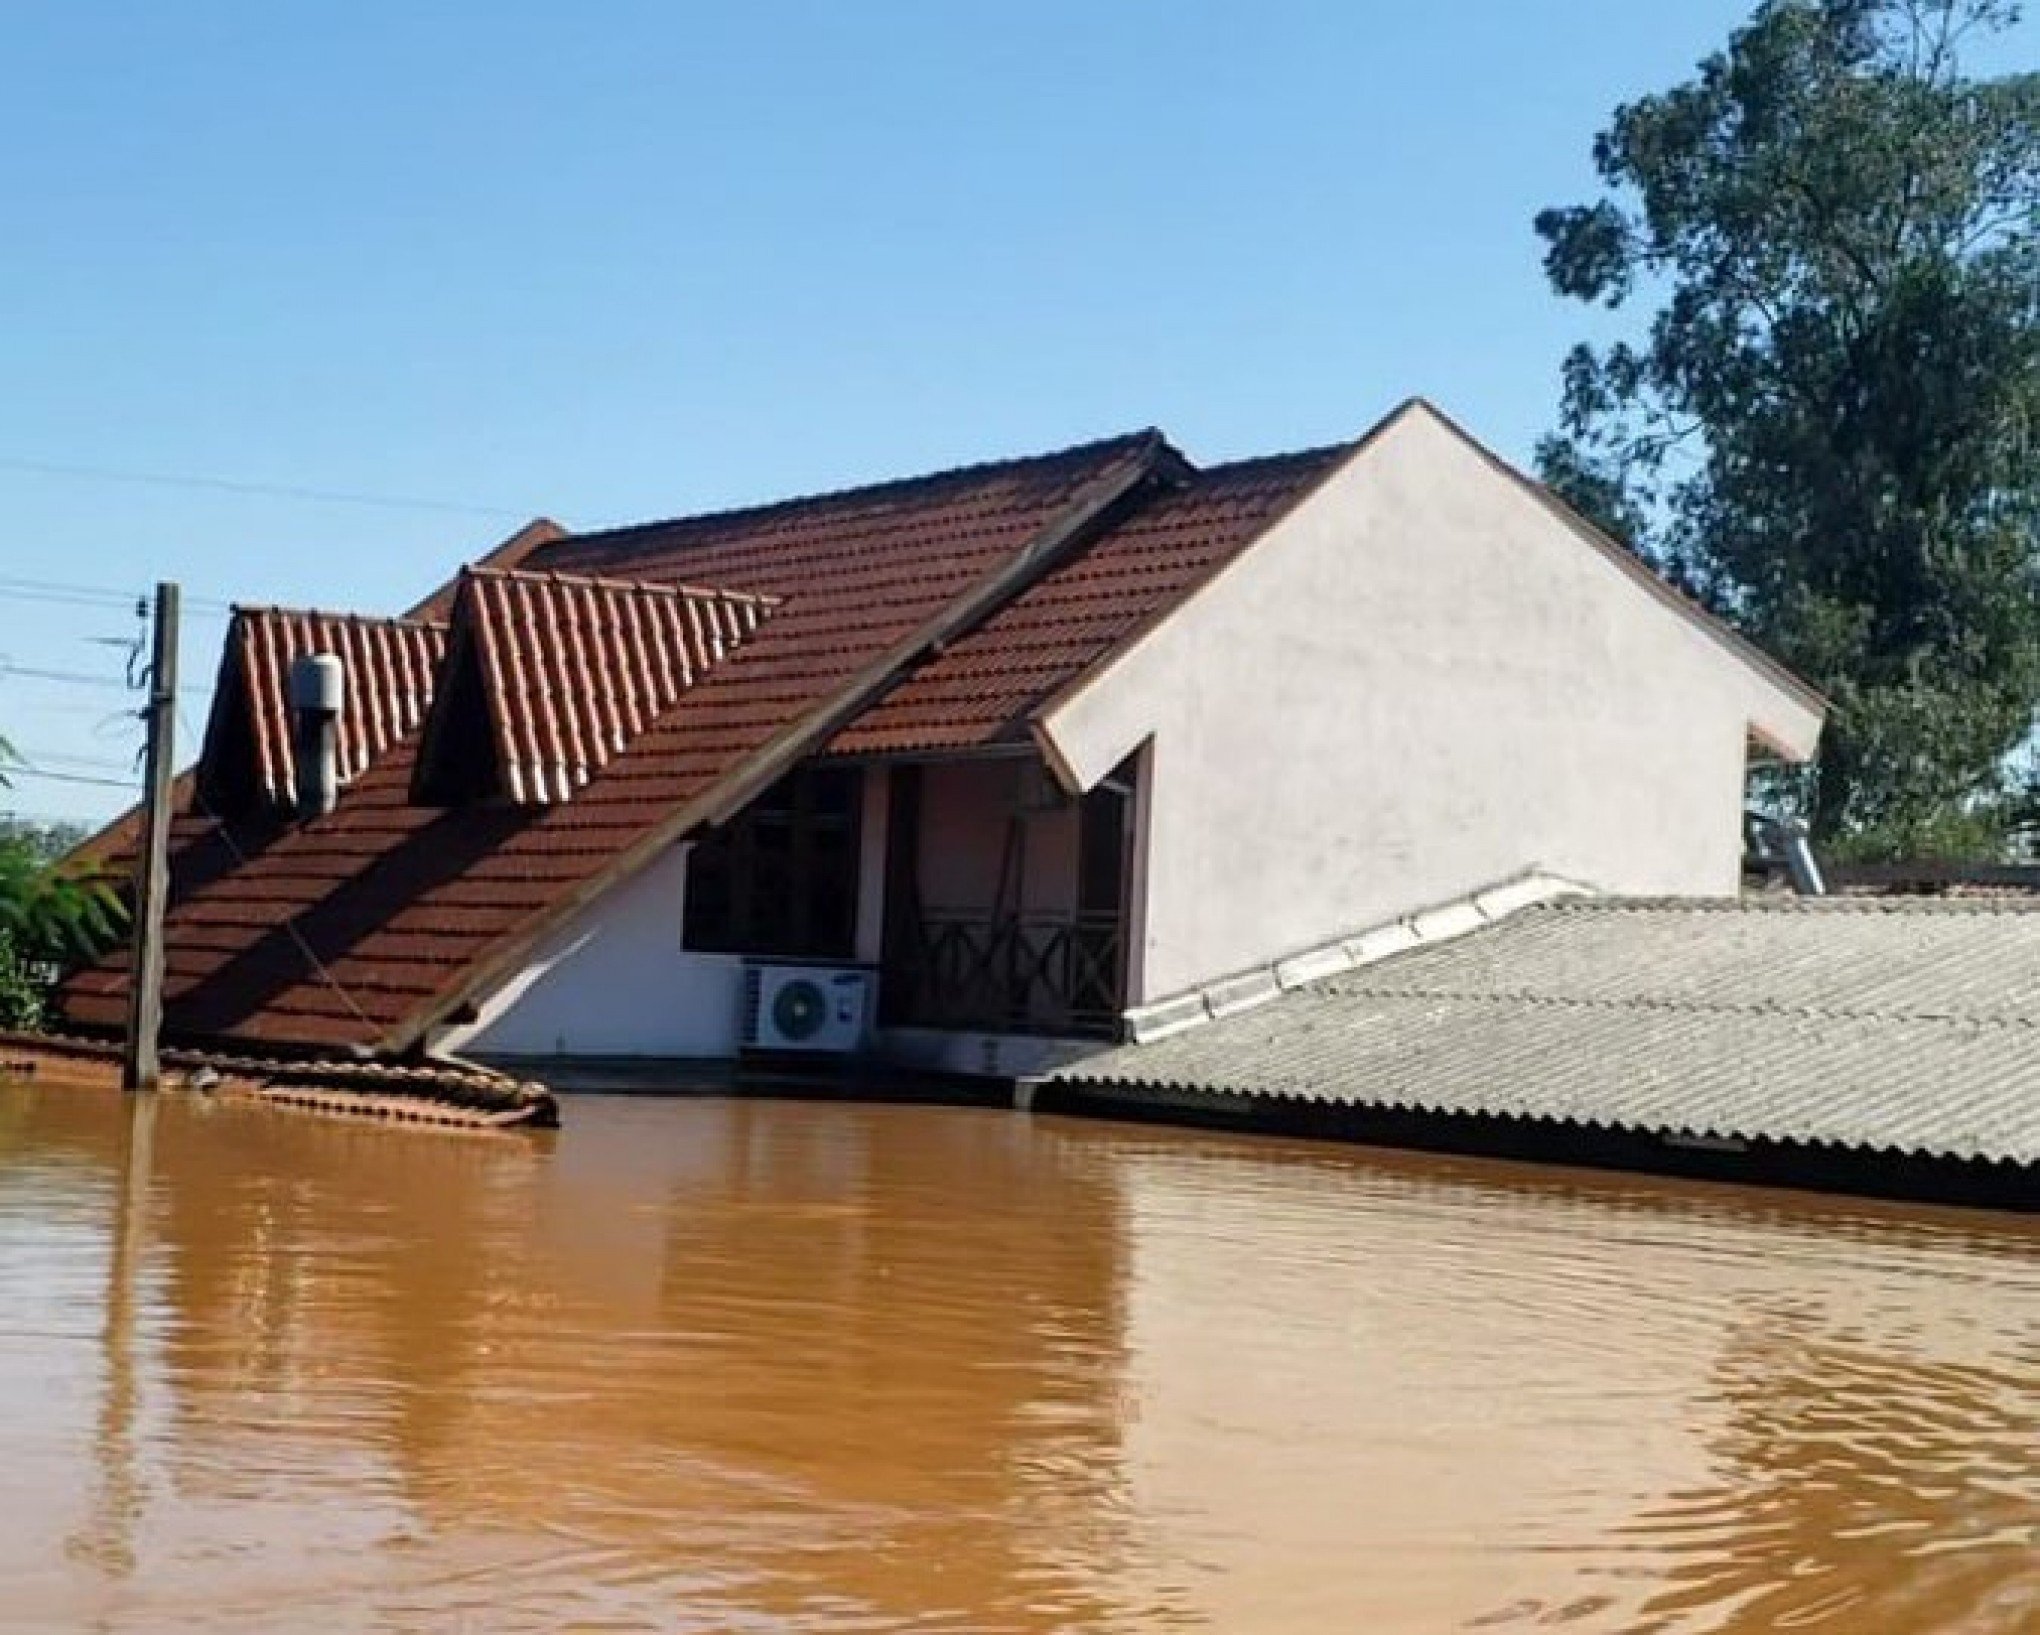 CATÁSTROFE NO RS: Prefeito de São Leopoldo publica foto de como ficou sua casa, atingida pela enchente no bairro Campina